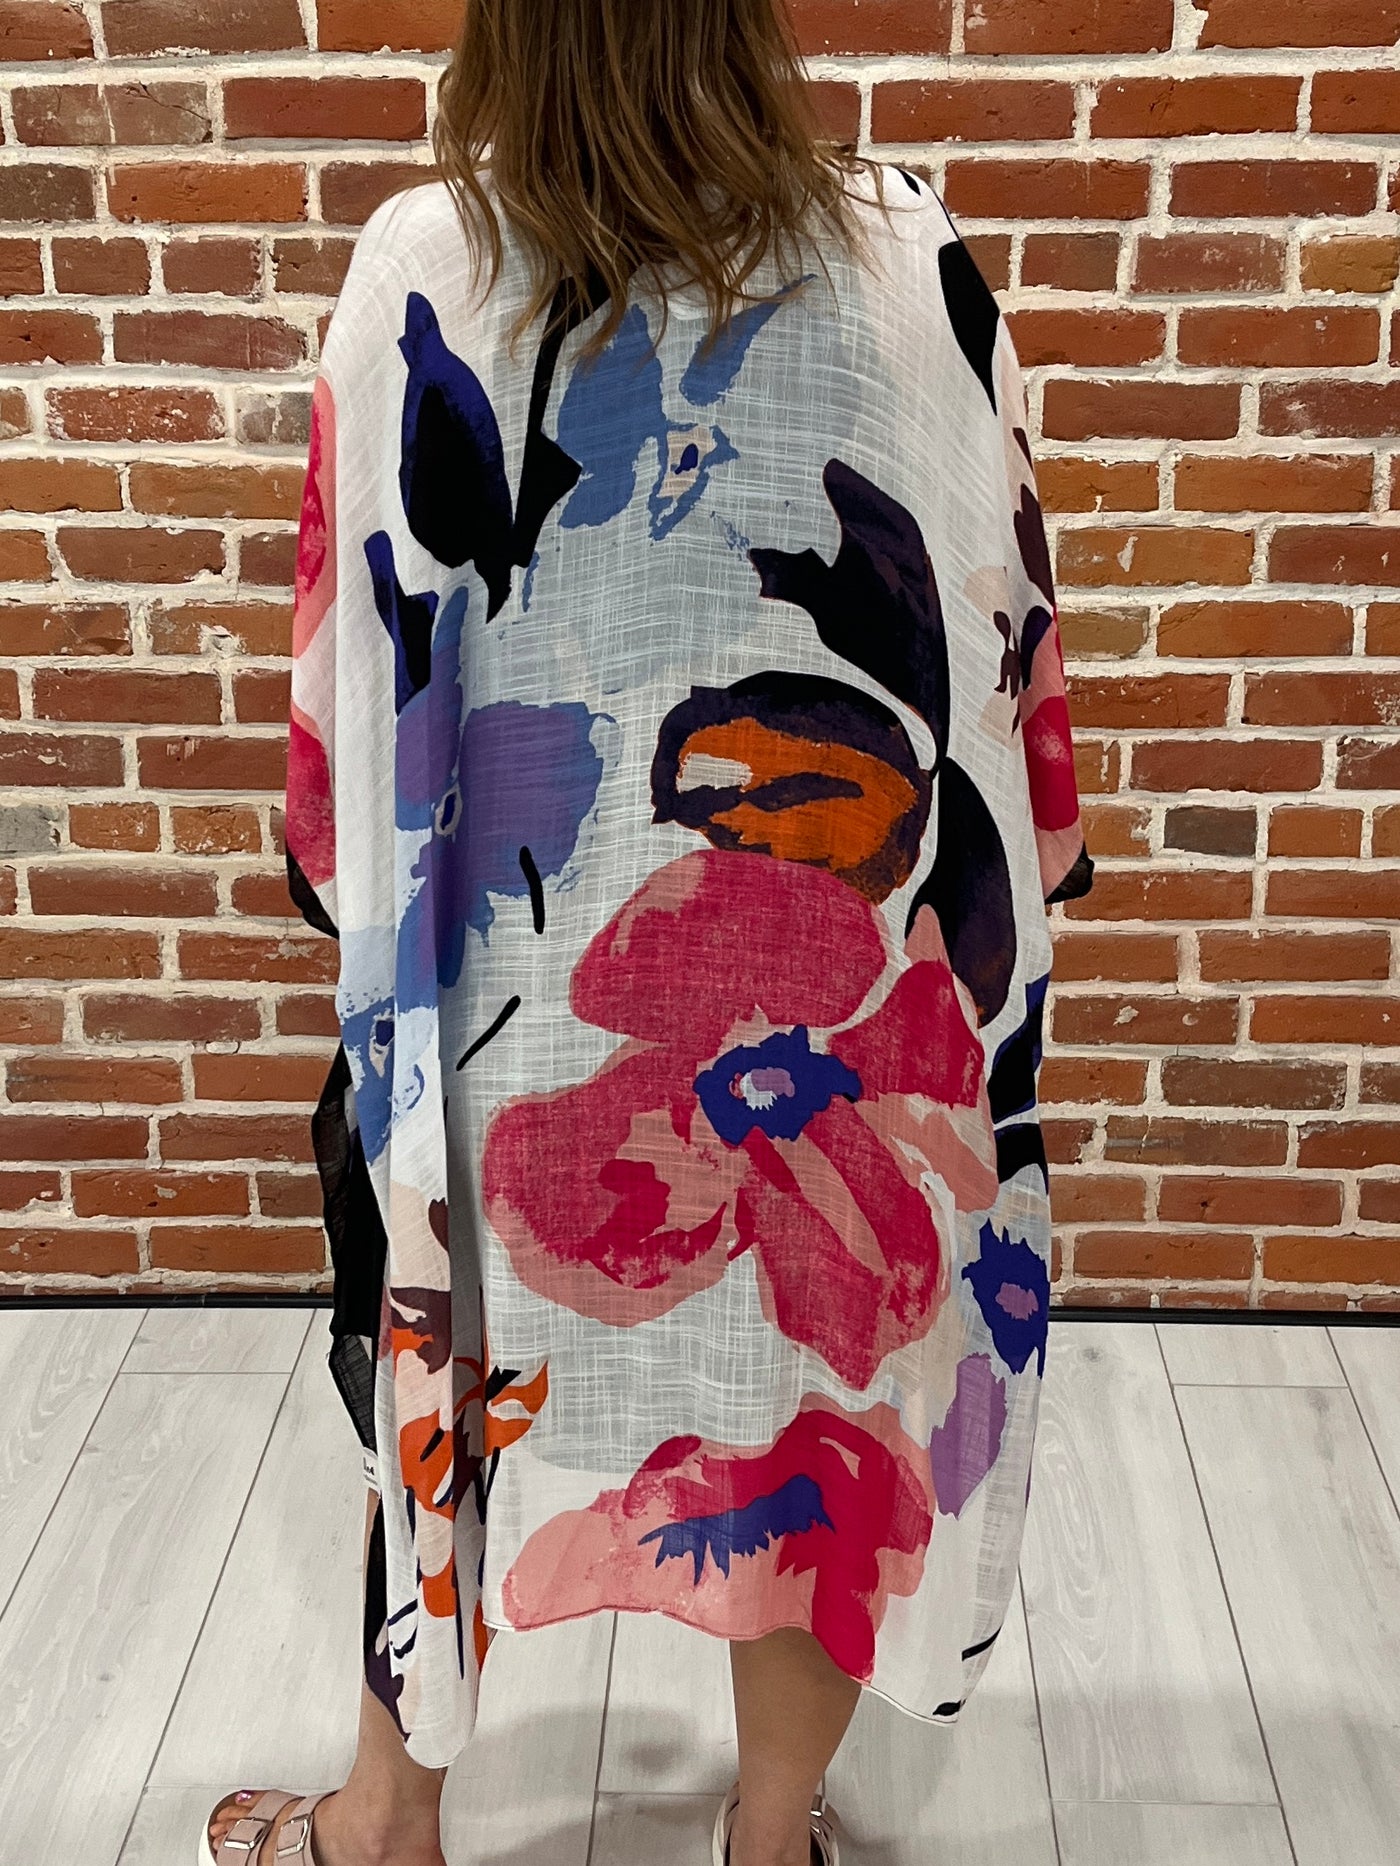 Watercolor Floral Kimono